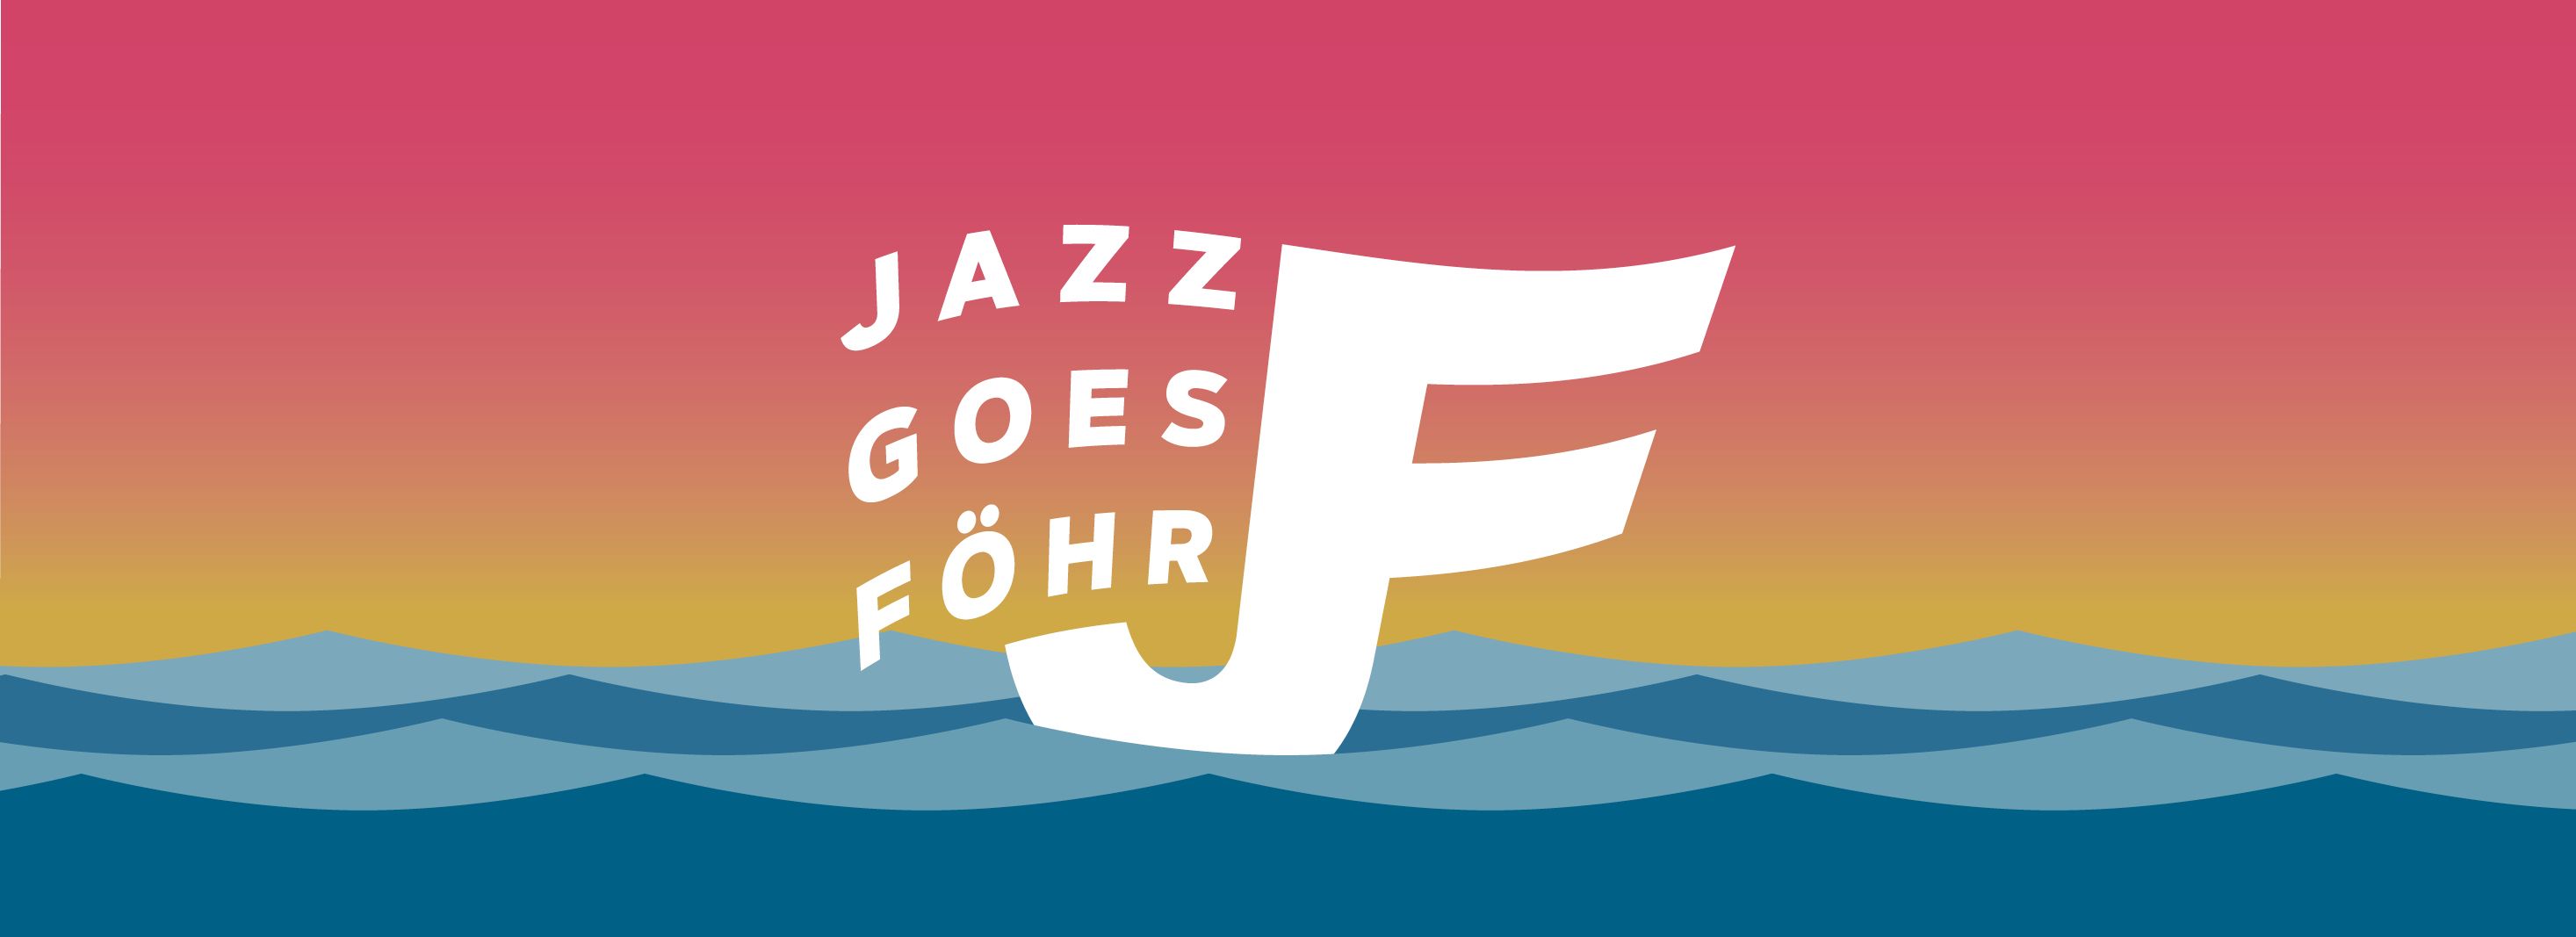 Jazz goes Föhr Logo auf gelbem Hintergrund